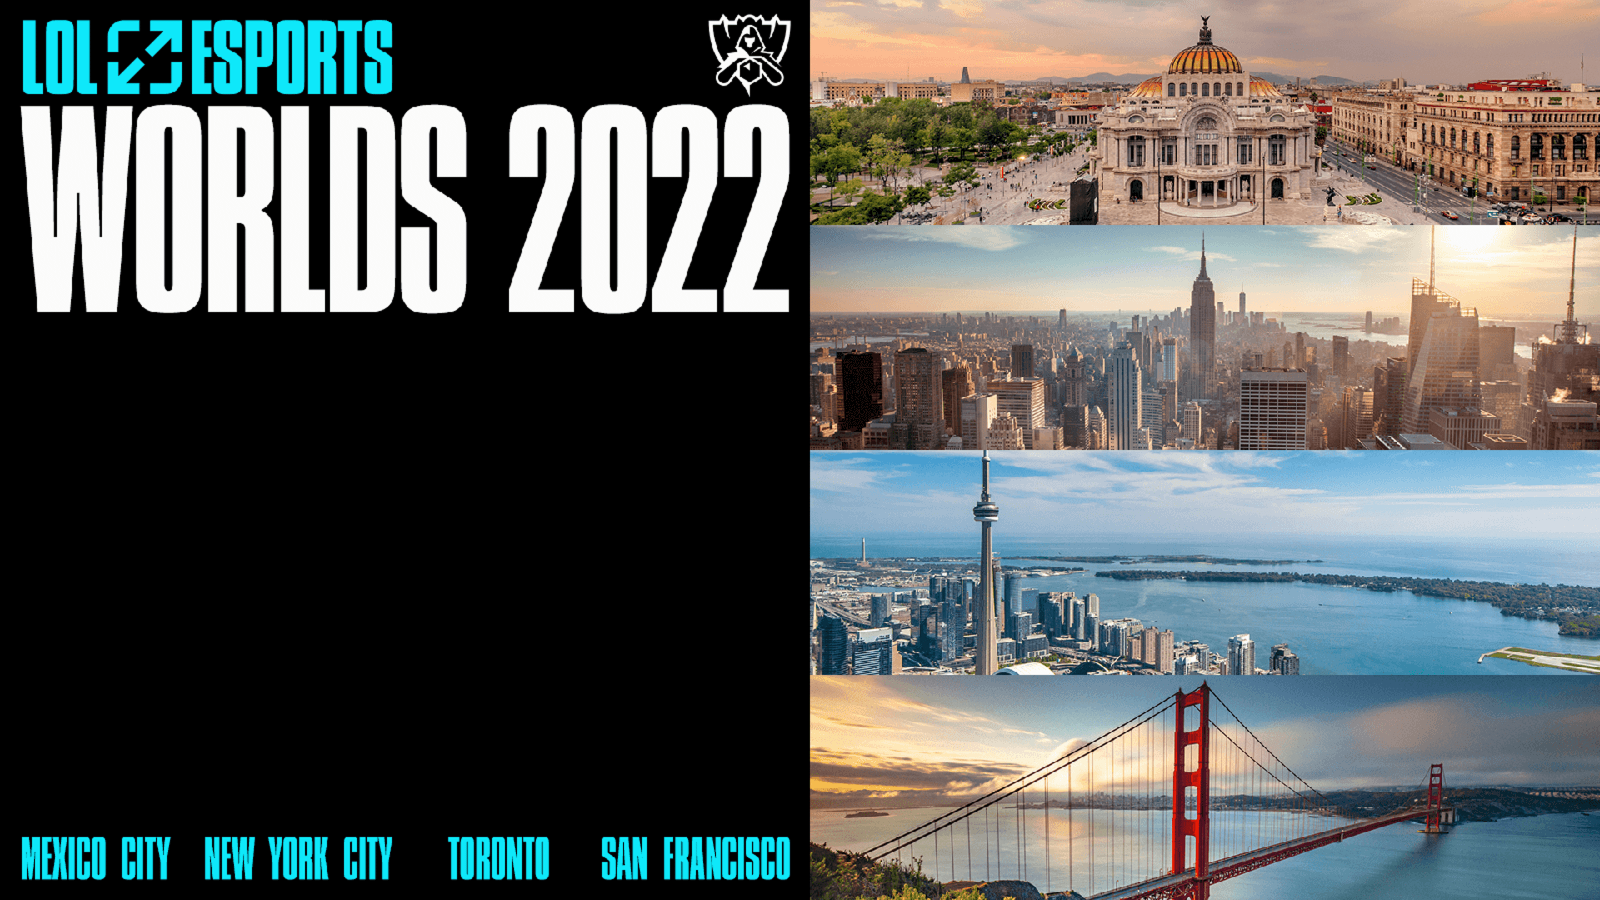 Giải vô địch thế giới Liên minh huyền thoại năm 2022 (CKTG 2022) lần đầu tiên được tổ chức tại nhiều thành phố ở Bắc Mỹ